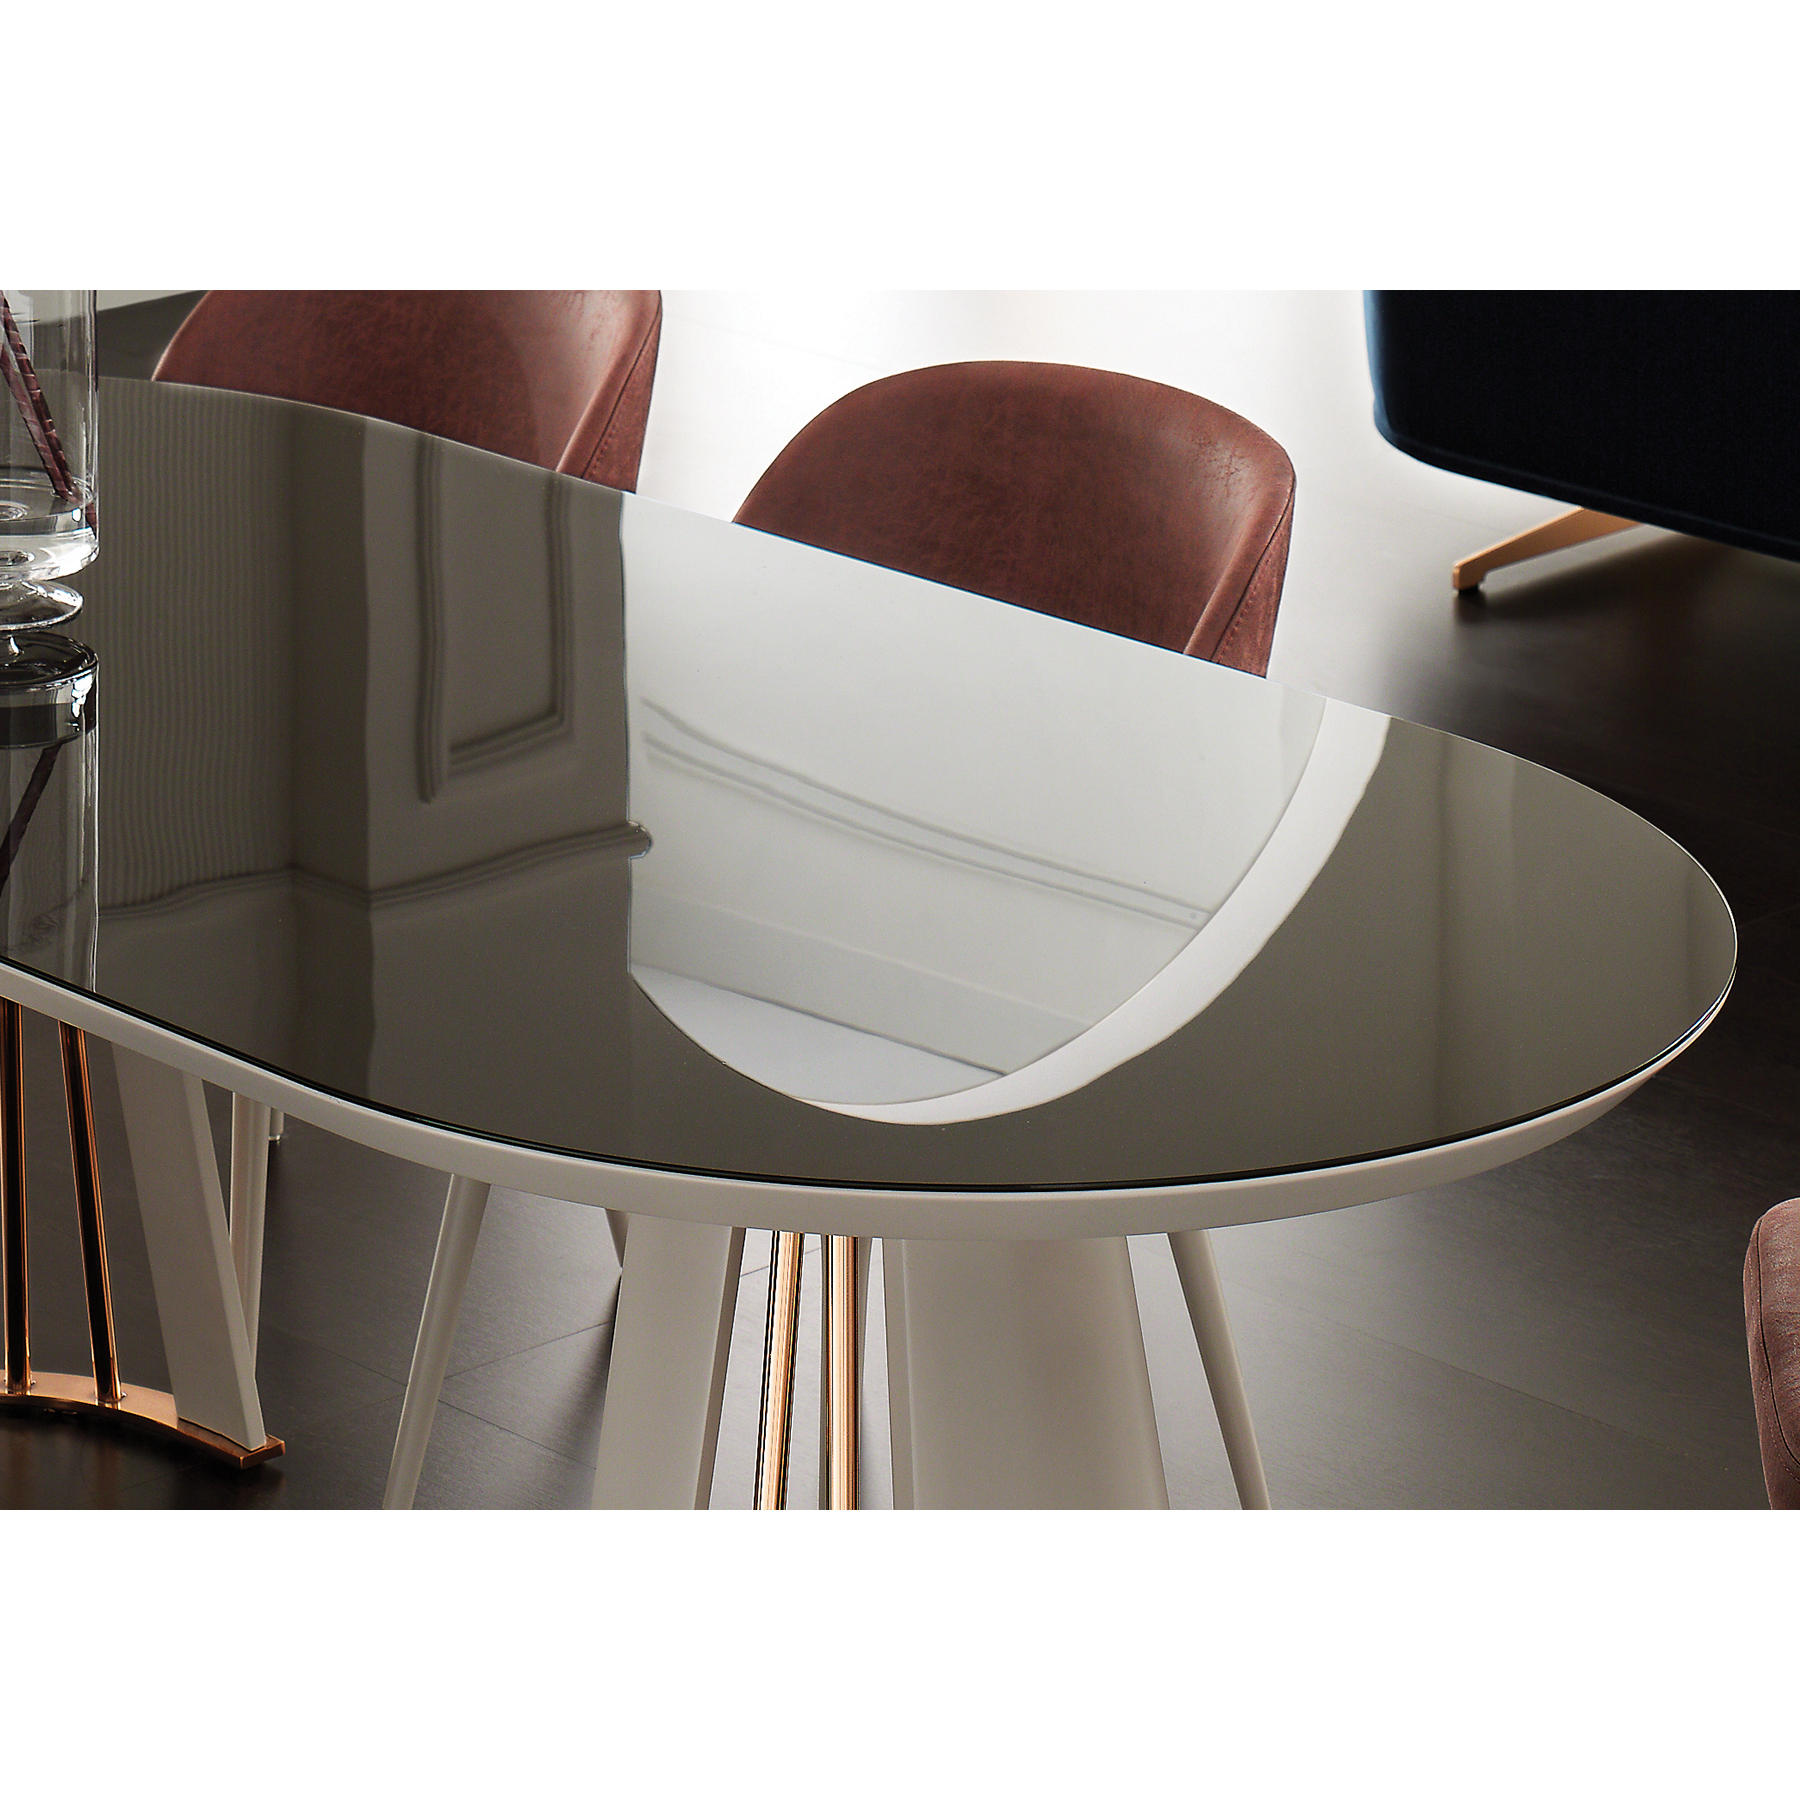 Стол обеденный Enza Home Vienna, овальный, размер 220х110х76 см, цвет пудровый, стеклянная поверхность07.182.0551.0000.0000.0226.